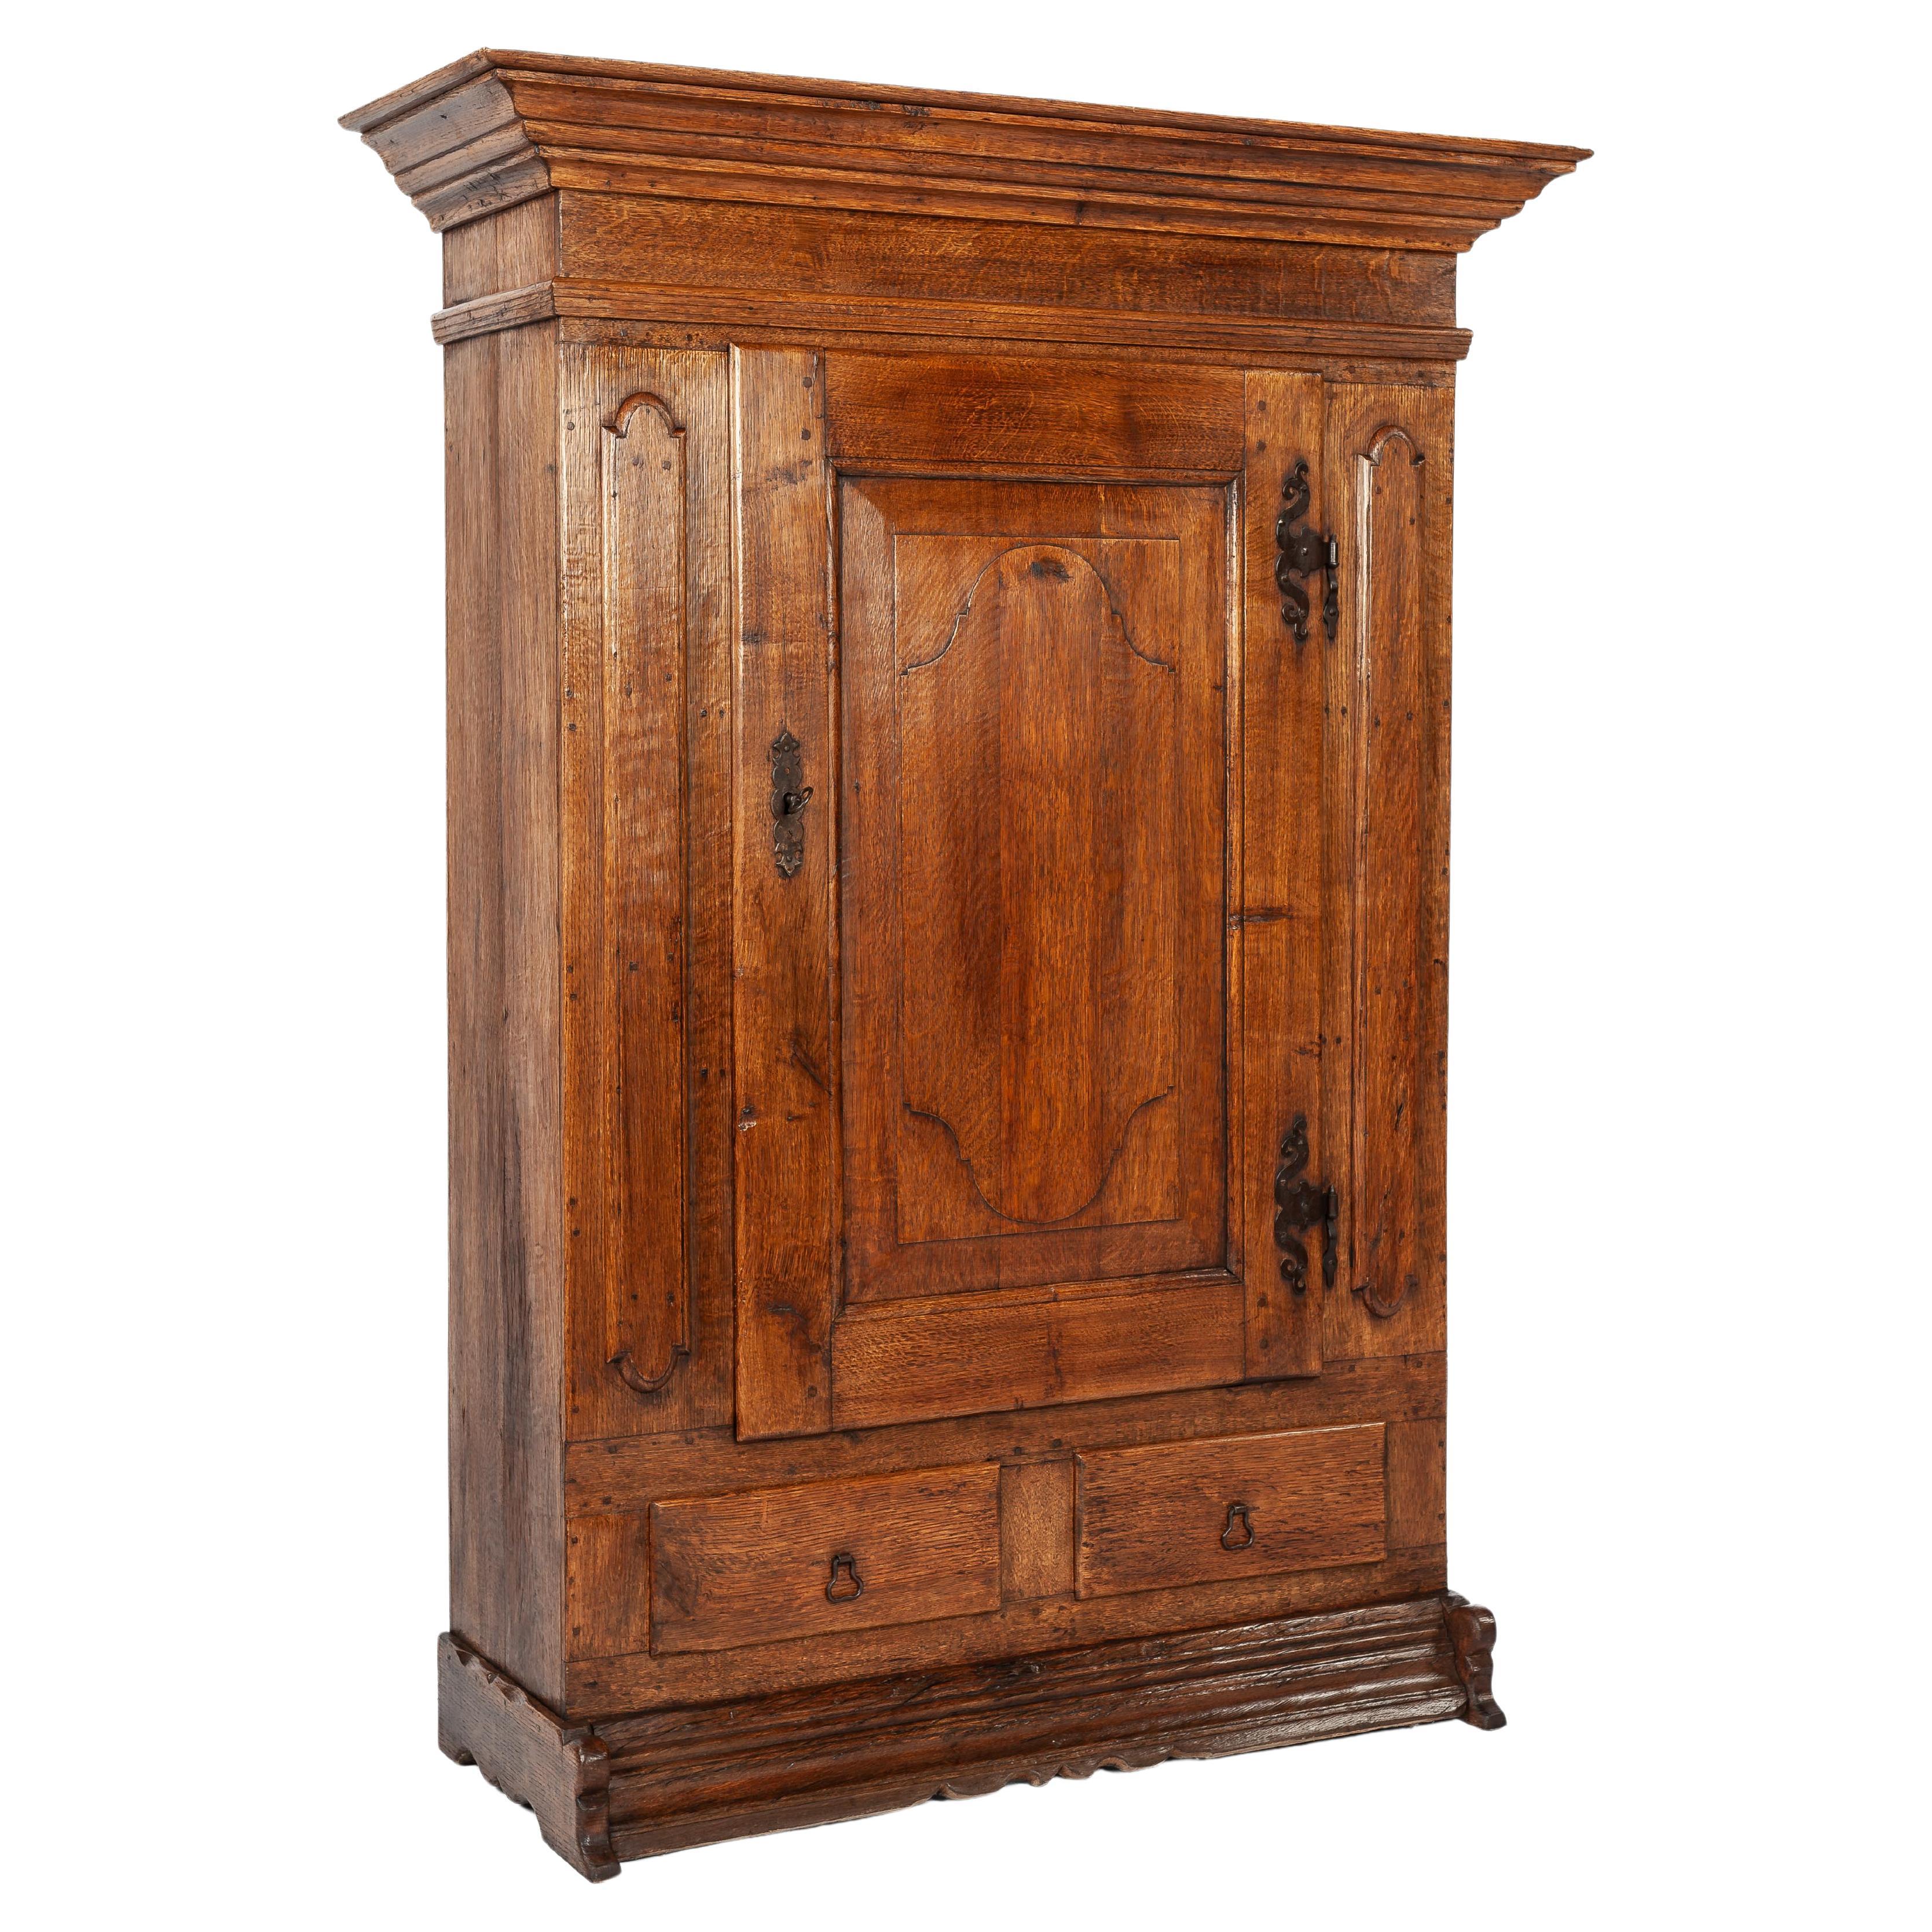  Antique German warm honey color oak single door cabinet circa 1900 For Sale